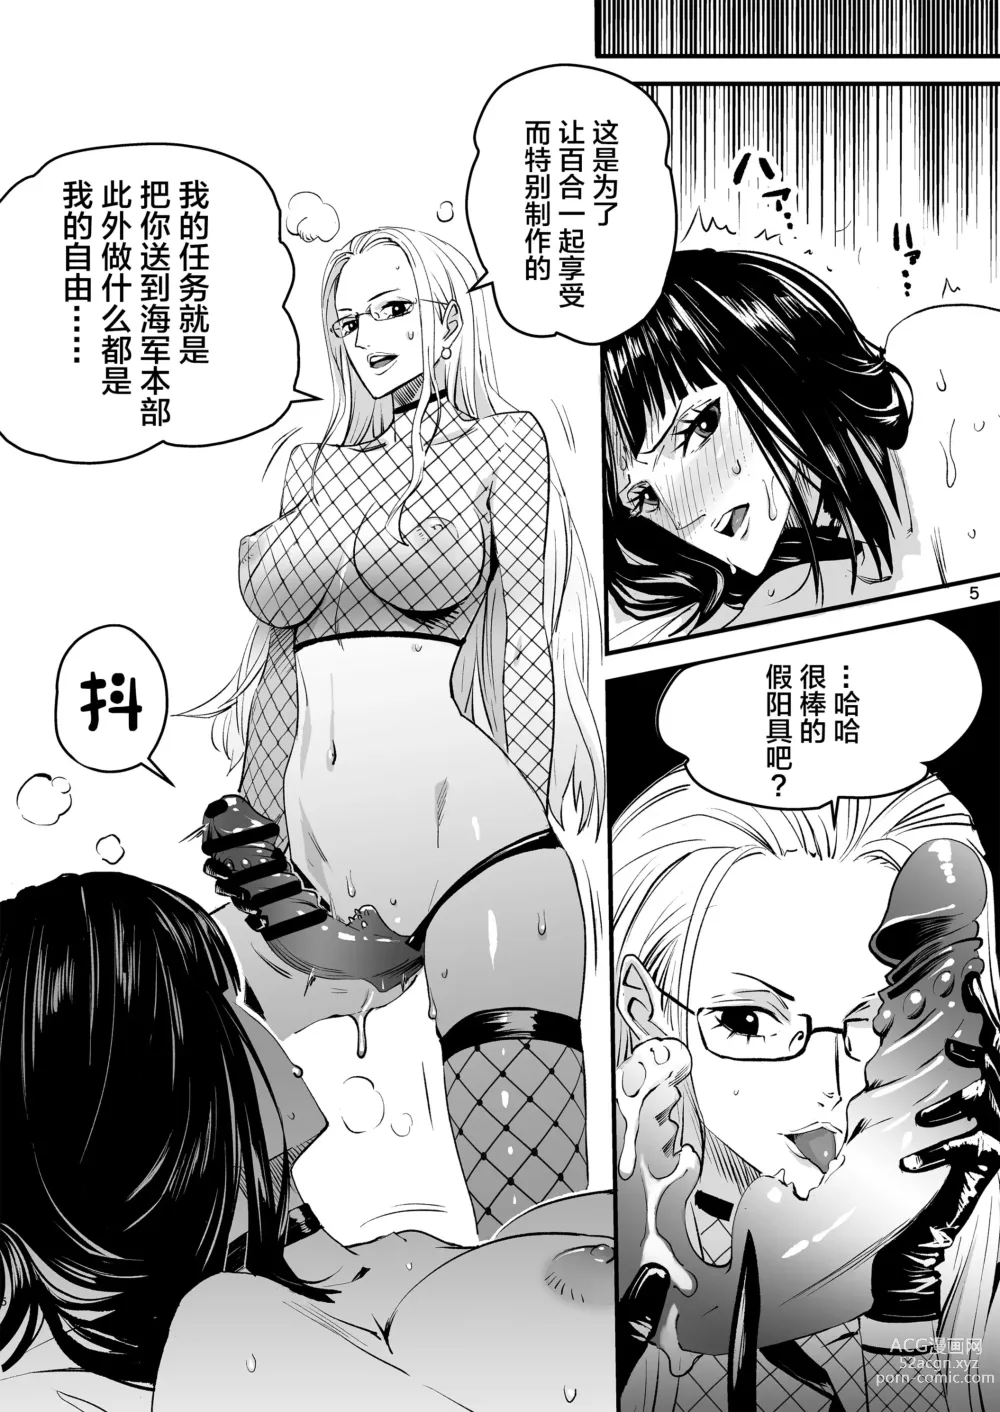 Page 5 of doujinshi Awa no Hana